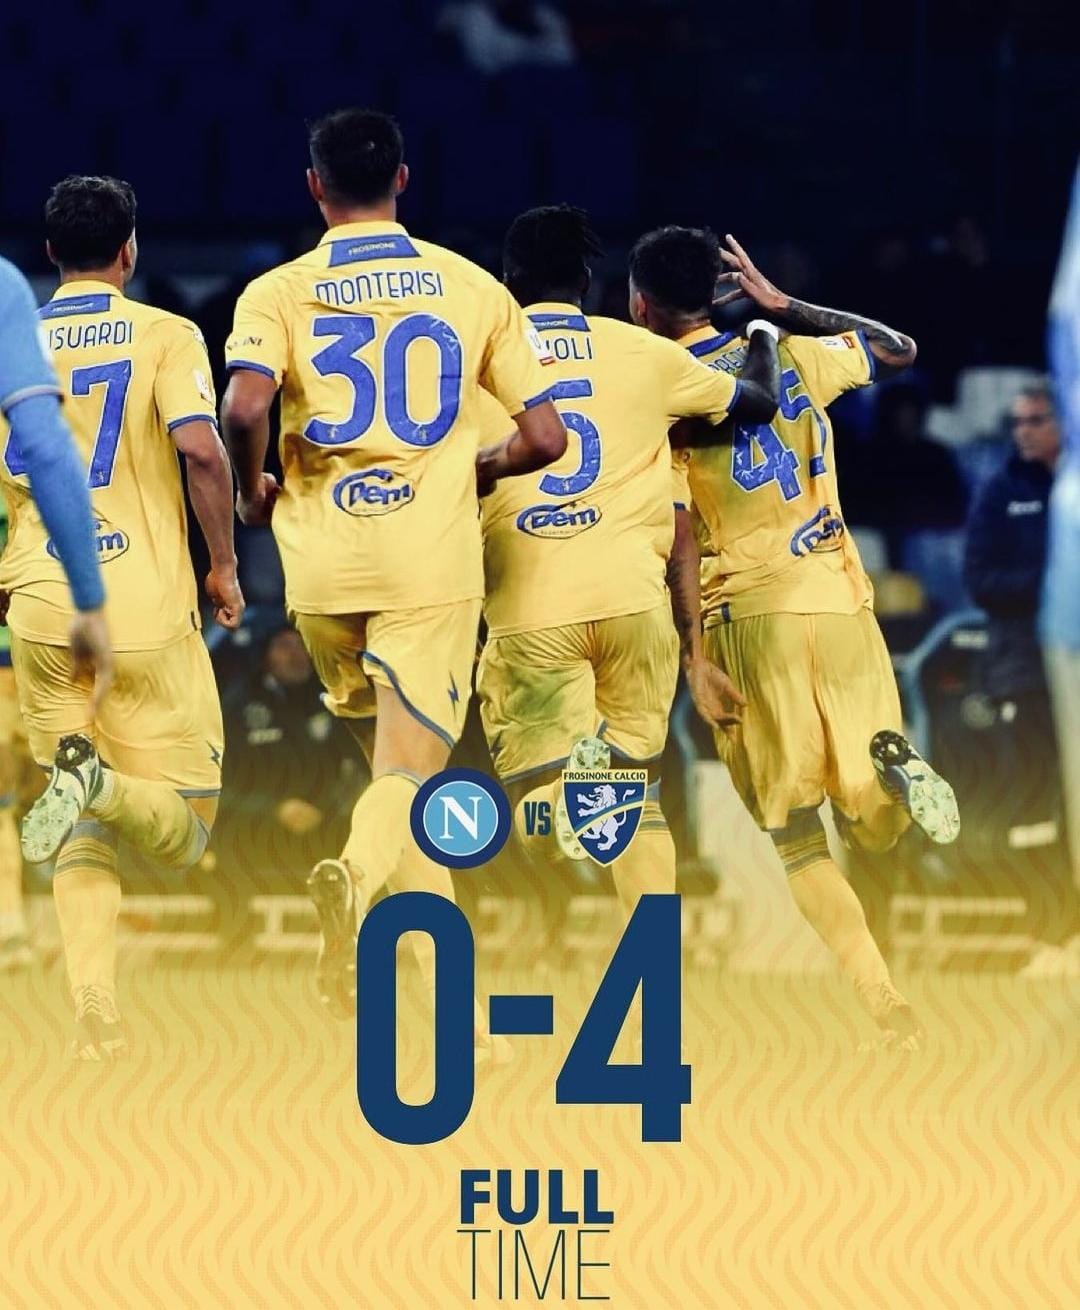 Taklukkan Napoli 4-0, Frosinone Melaju ke Babak Perempat Final Coppa Italia